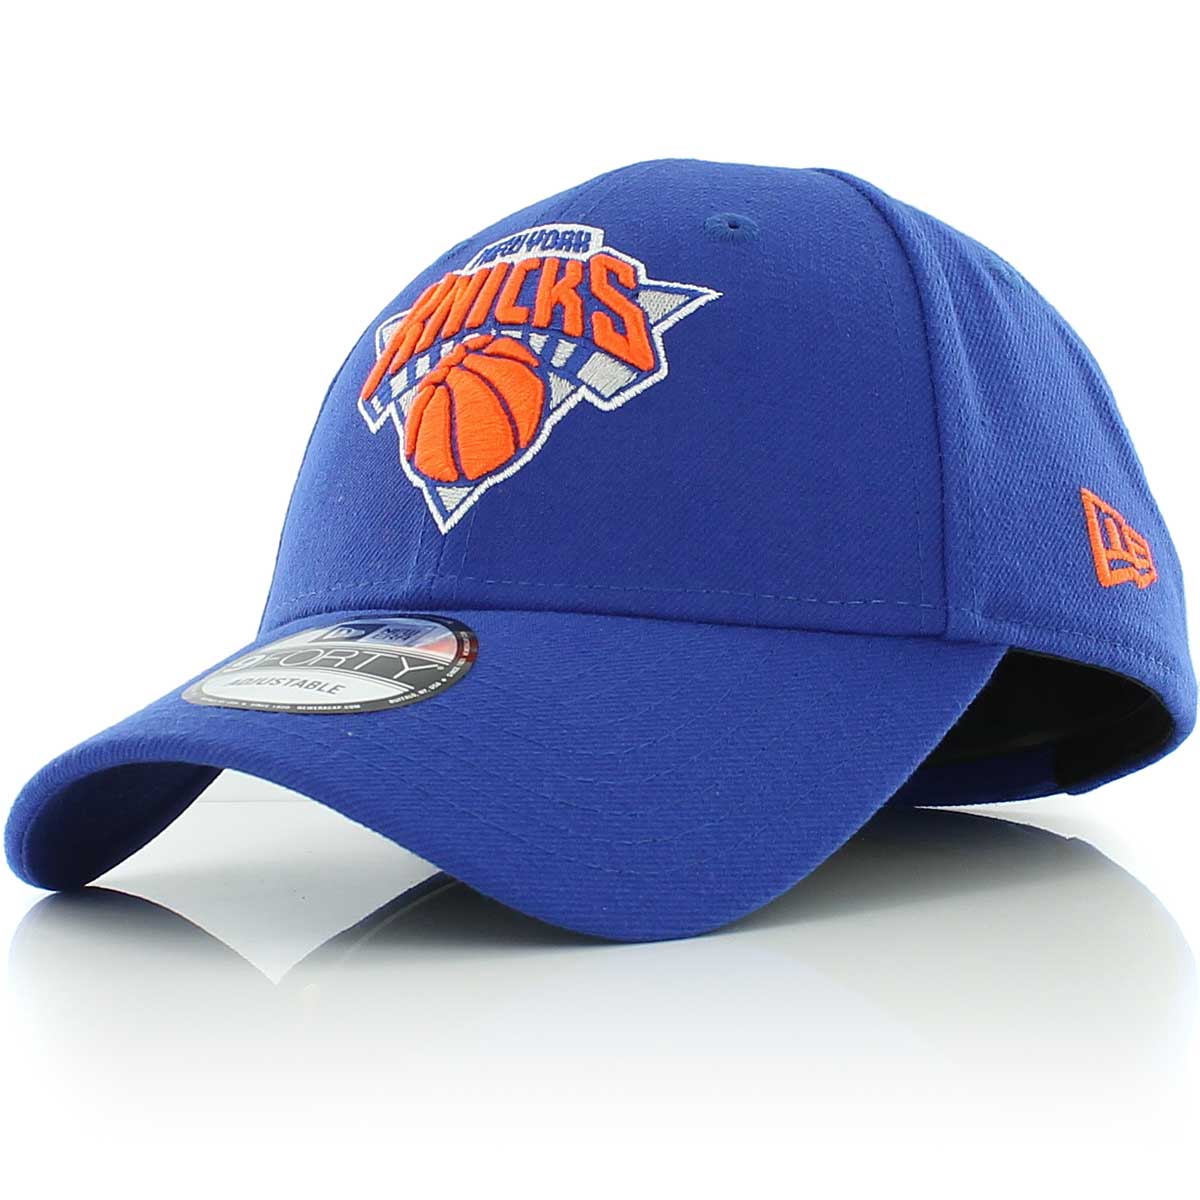 New Era Nba 940 The League Ny Knicks, Blue